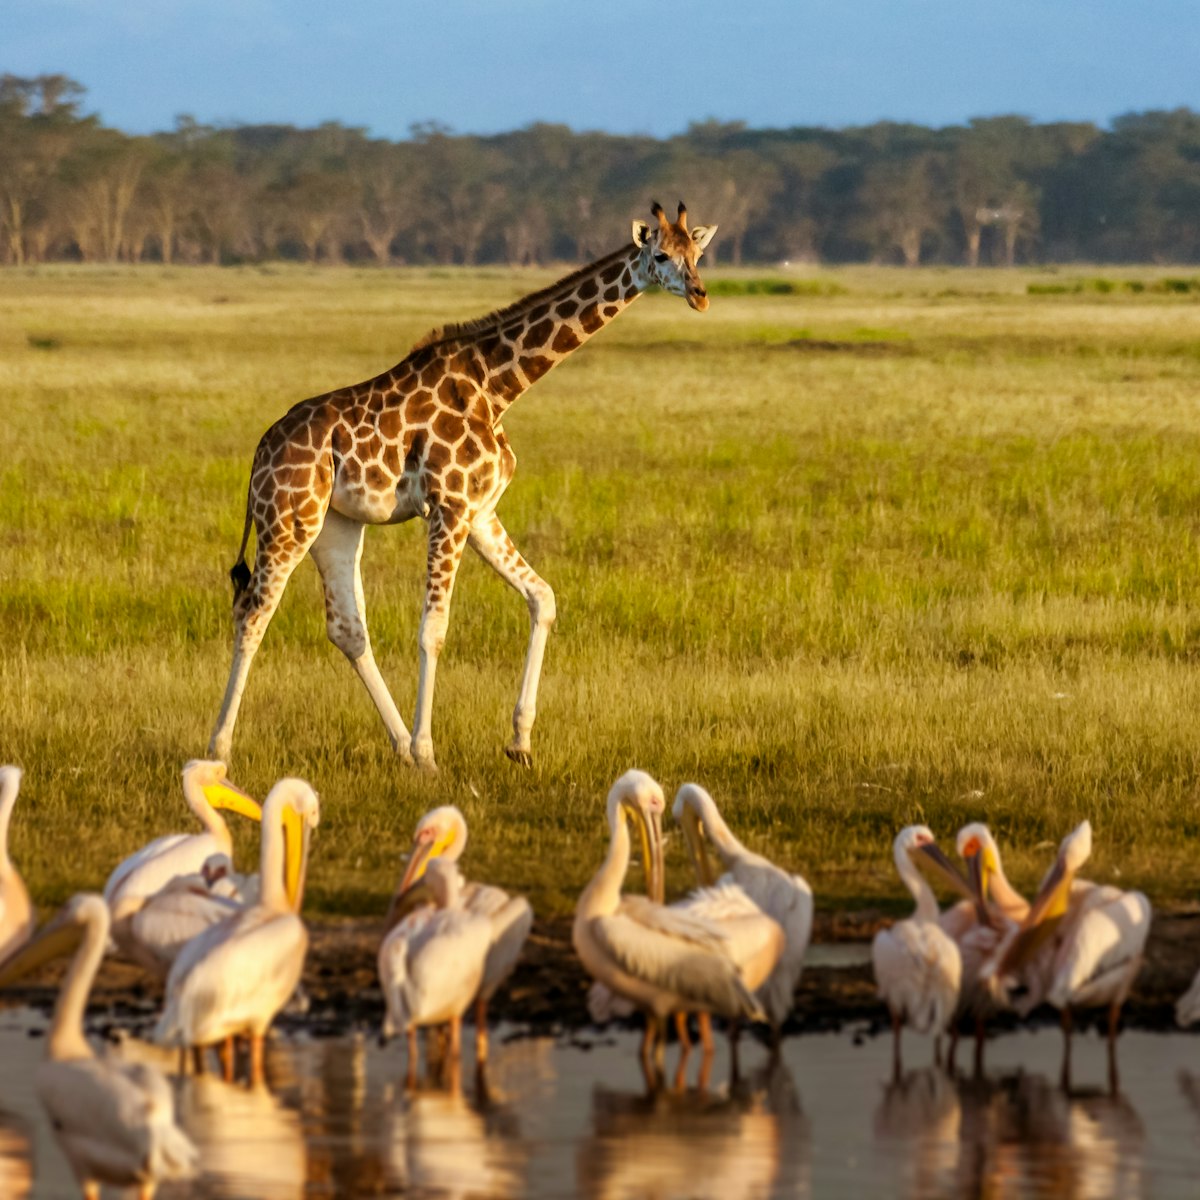 Giraffe and pelicans in Lake Nakuru National Park, Kenya.